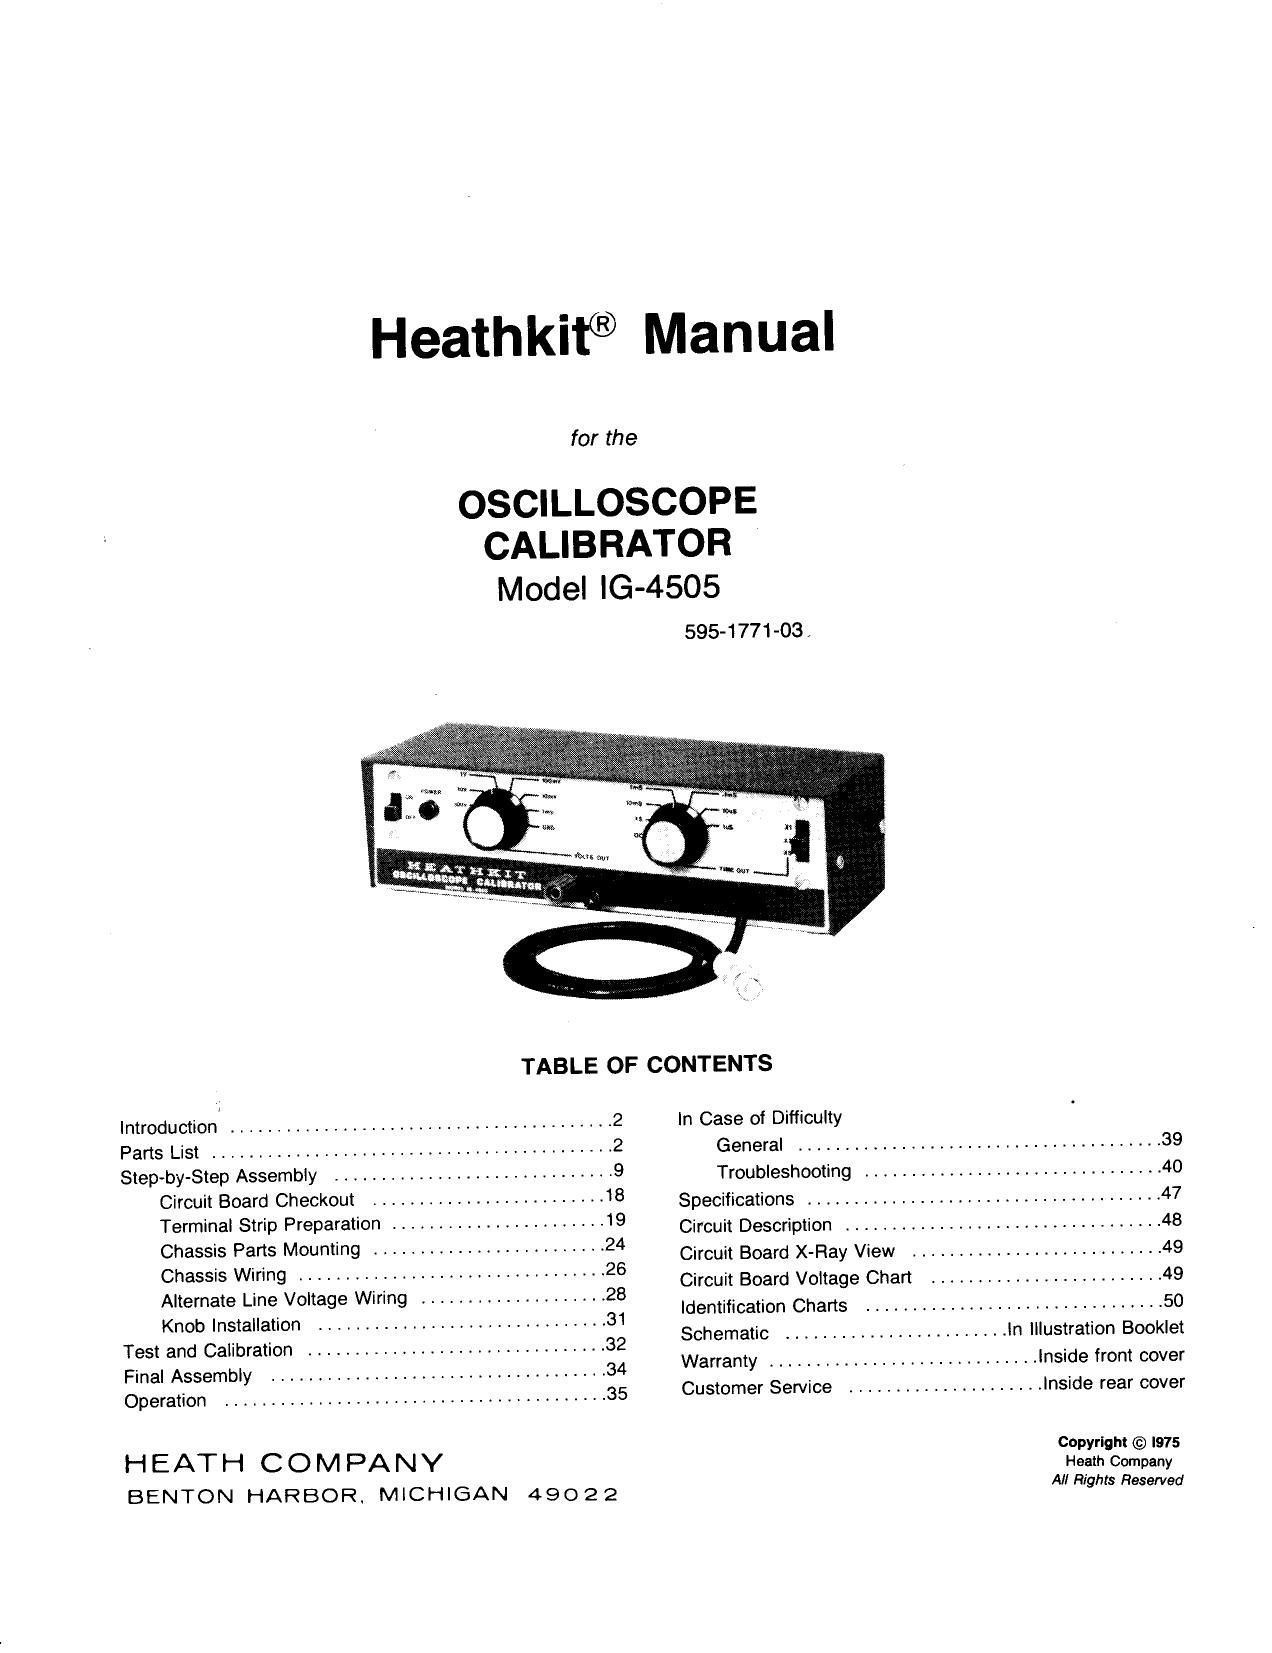 Heathkit IG 4505 Manual